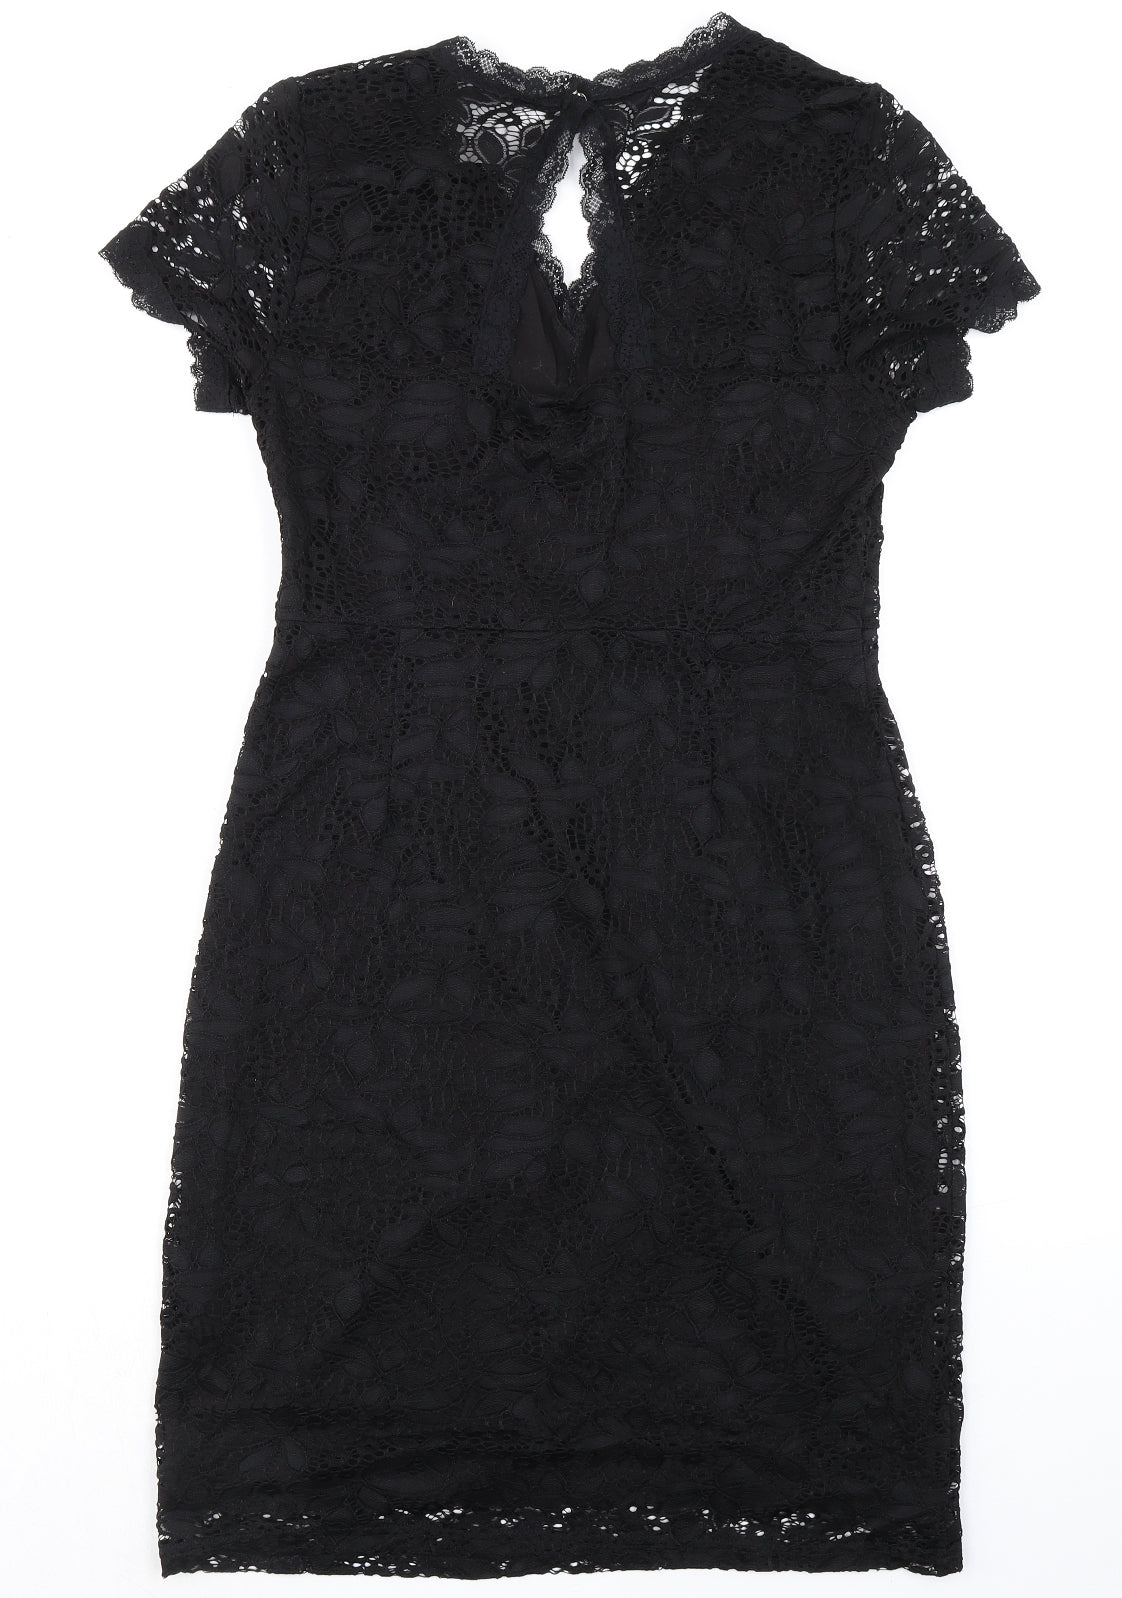 Yumi Womens Black Polyamide Pencil Dress Size 12 V-Neck Button